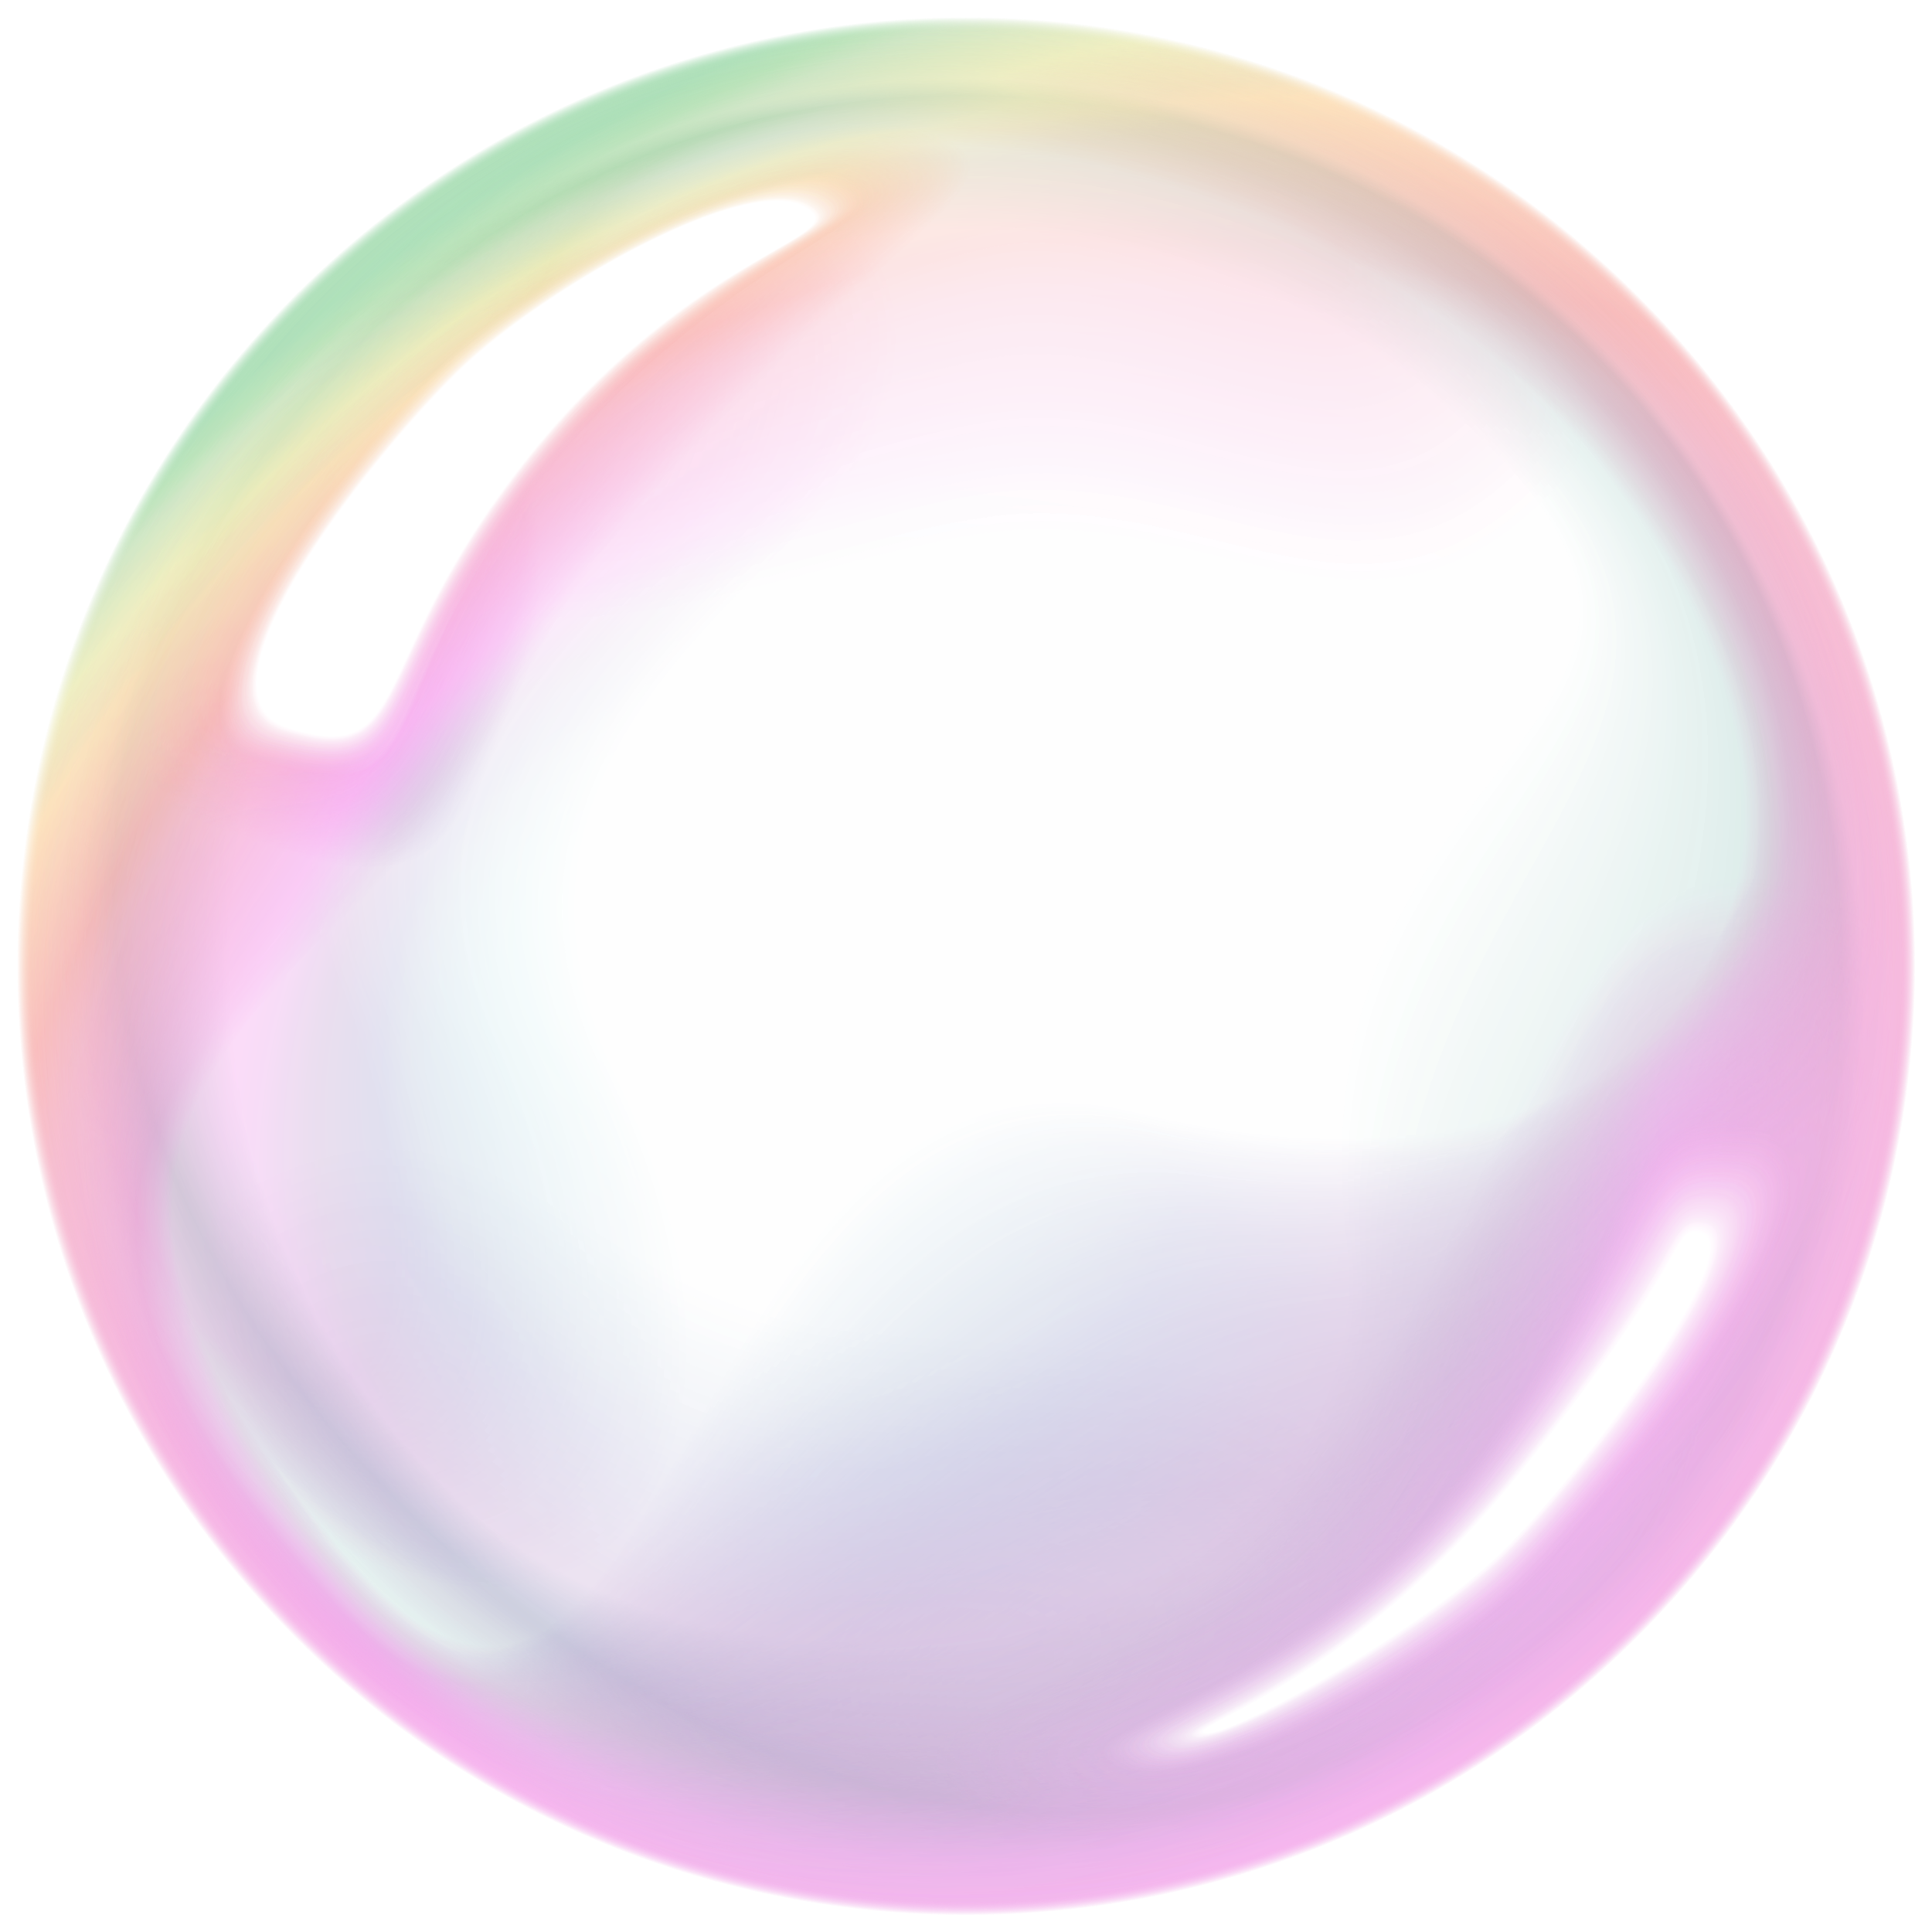 Soap bubbles PNG transparent image download, size: 2828x2828px